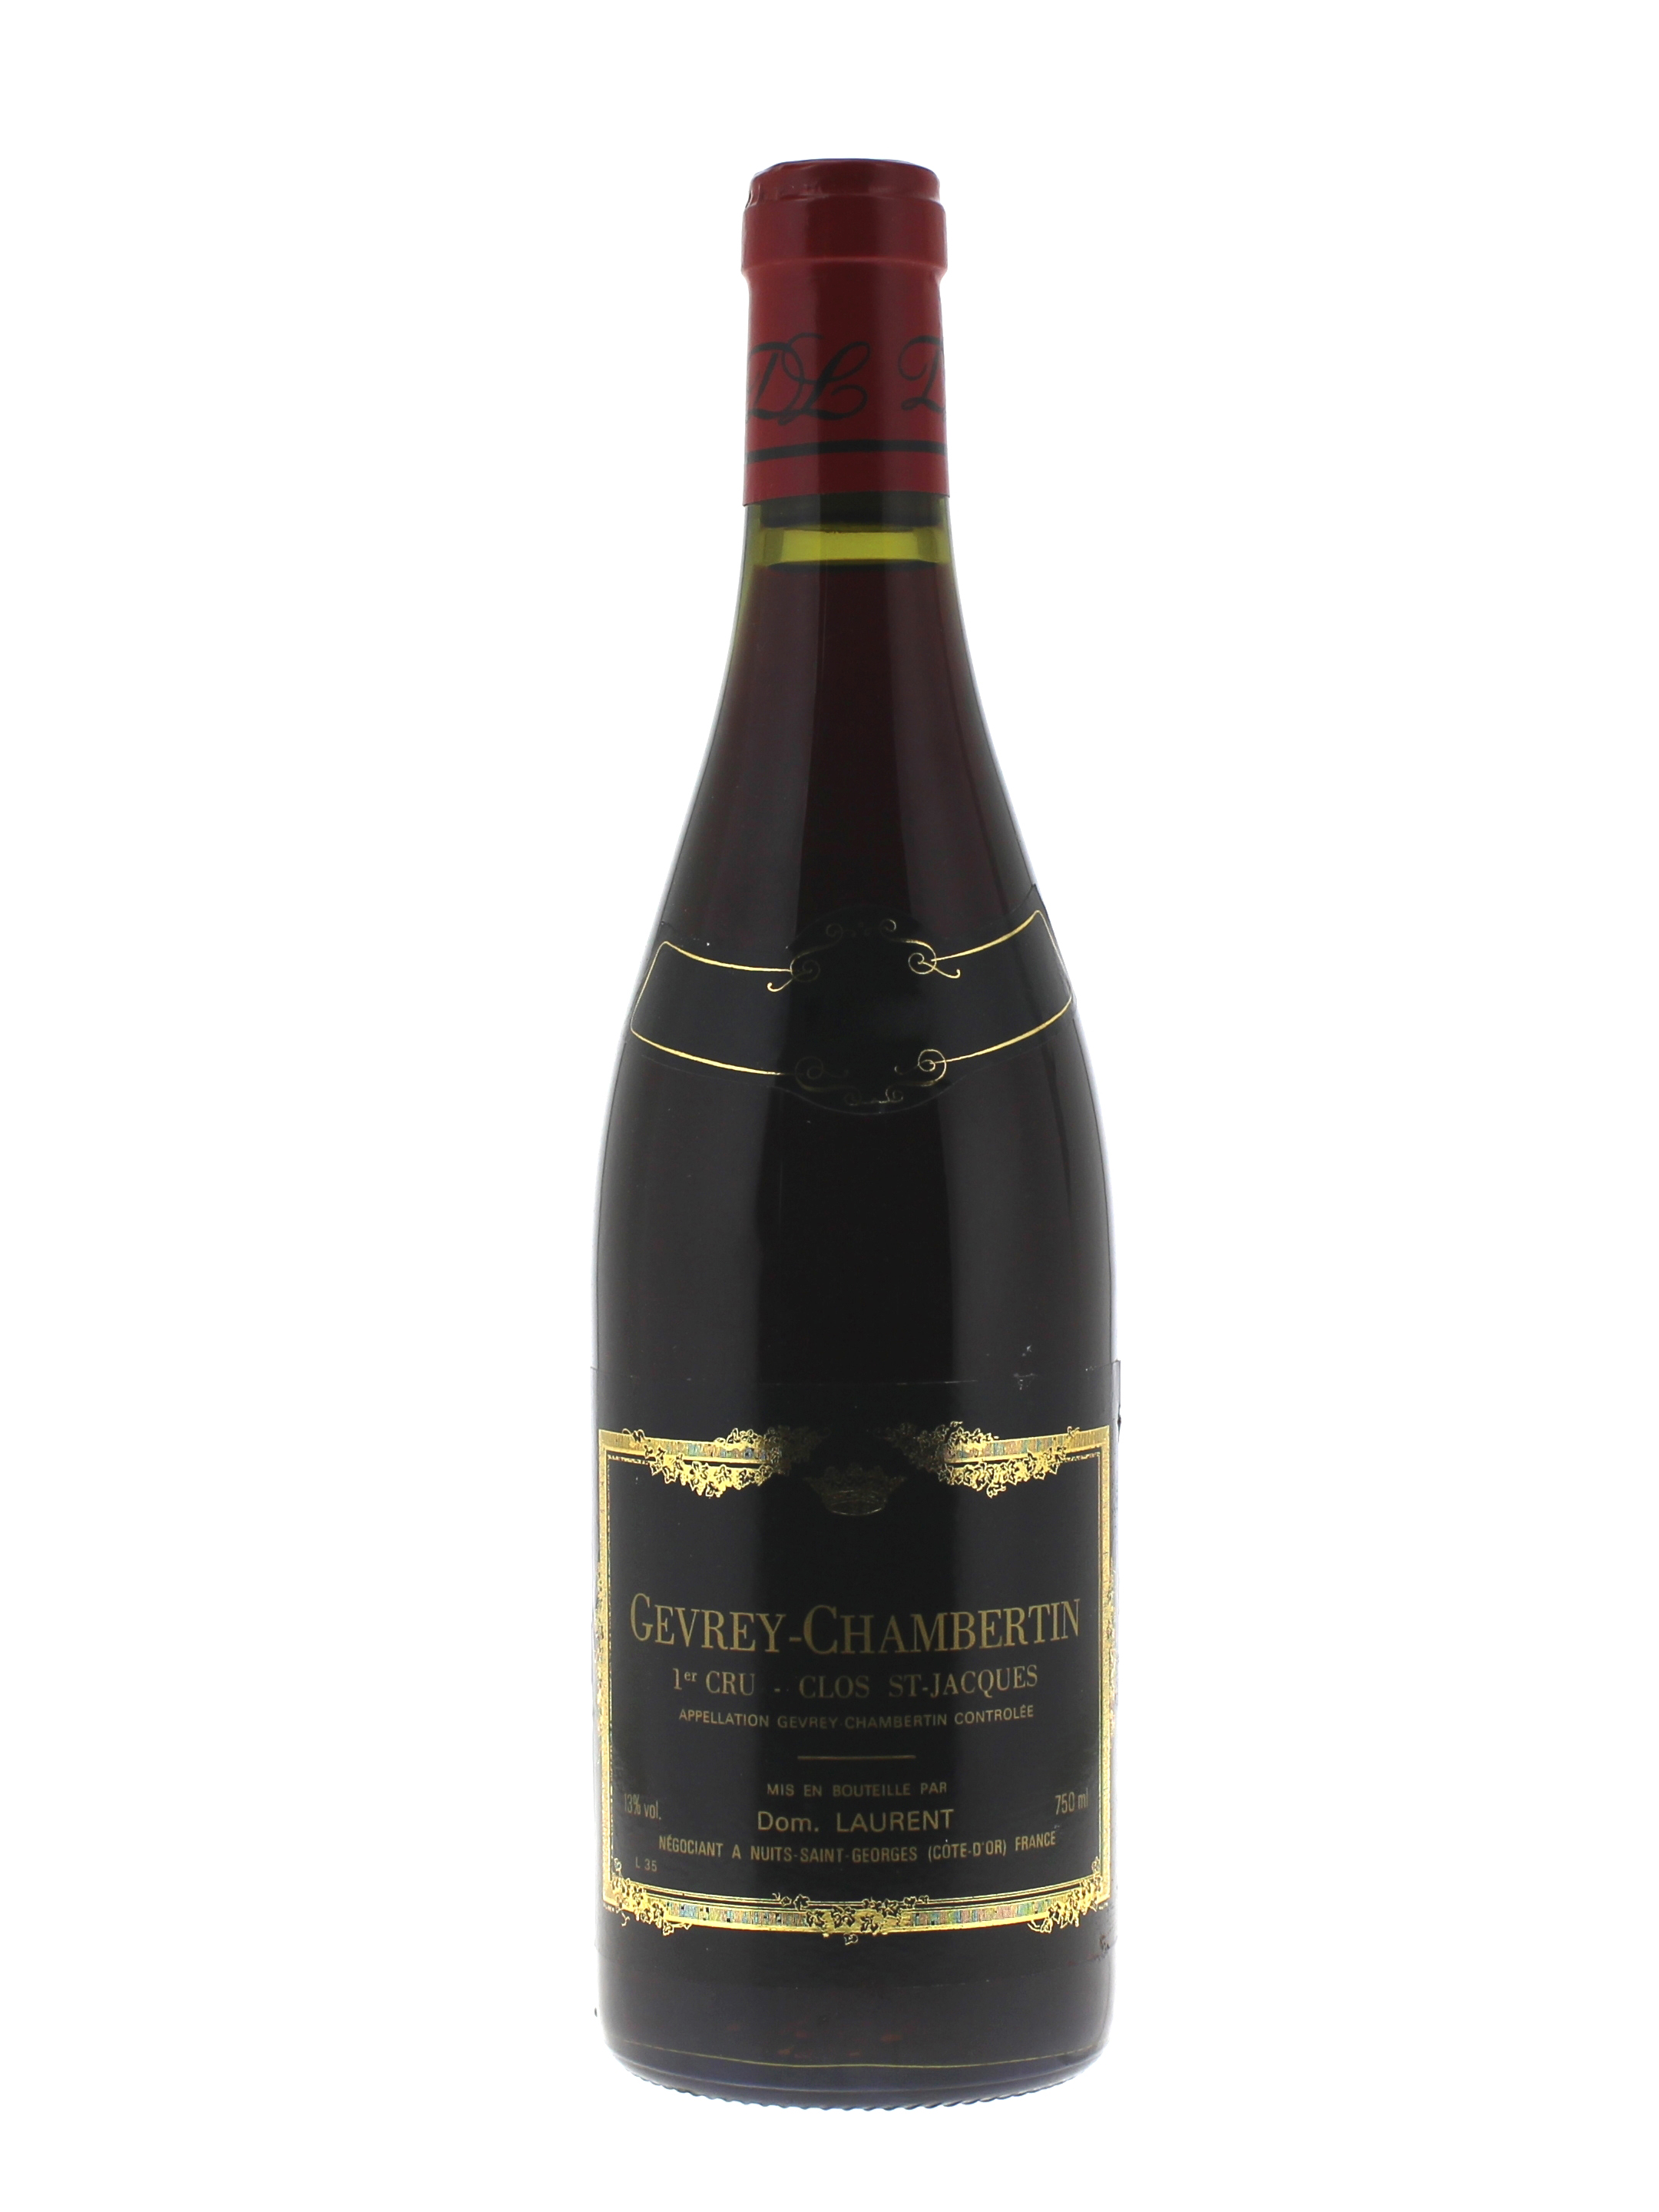 Gevrey chambertin clos saint jacques 1995 Domaine LAURENT, Bourgogne rouge